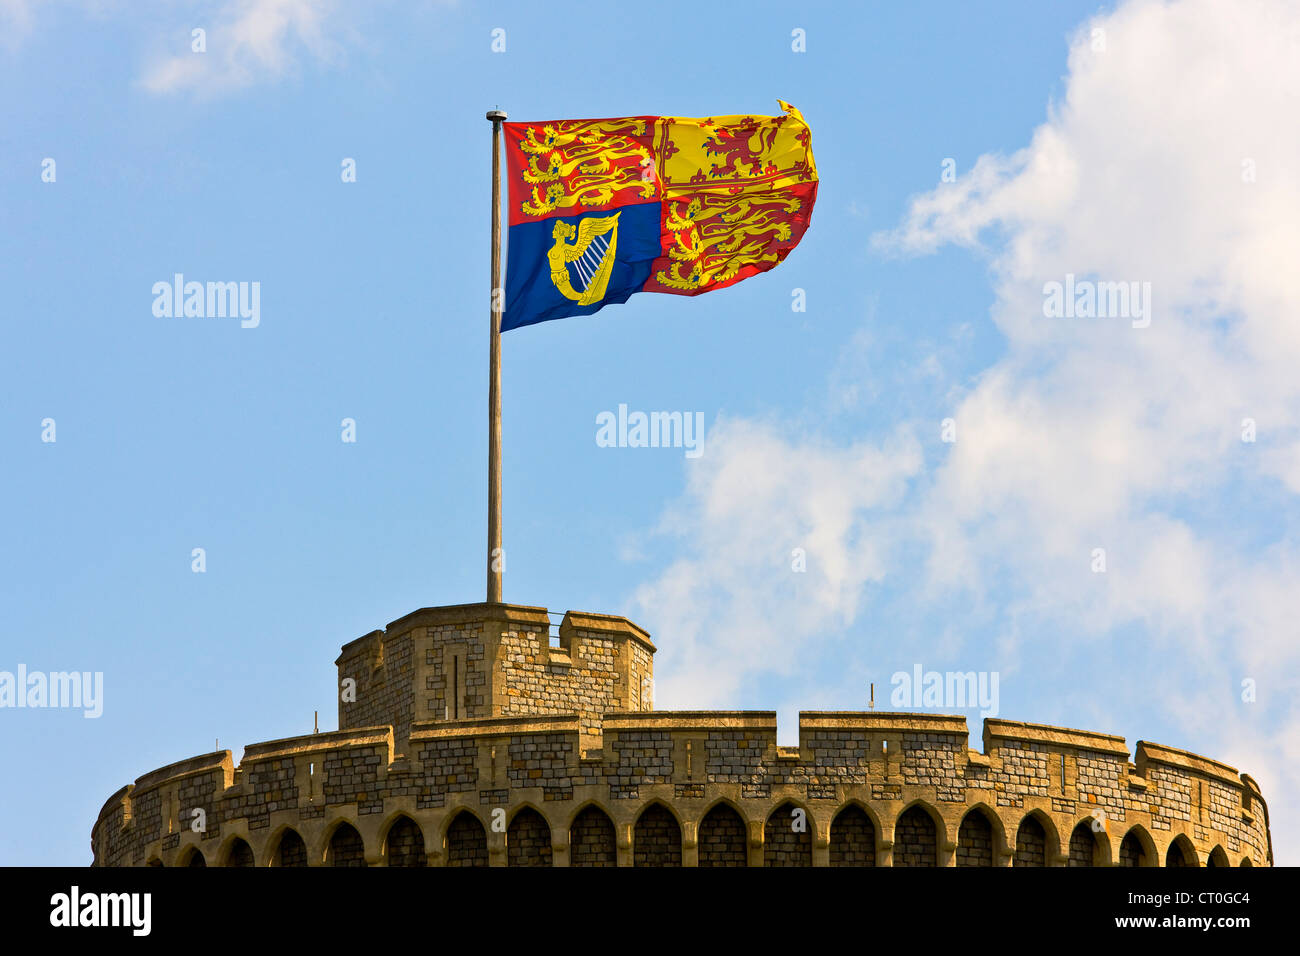 Cérémonie spéciale grand drapeau Royal Standard de la tour ronde ou la garder au château de Windsor. JMH6021 Banque D'Images